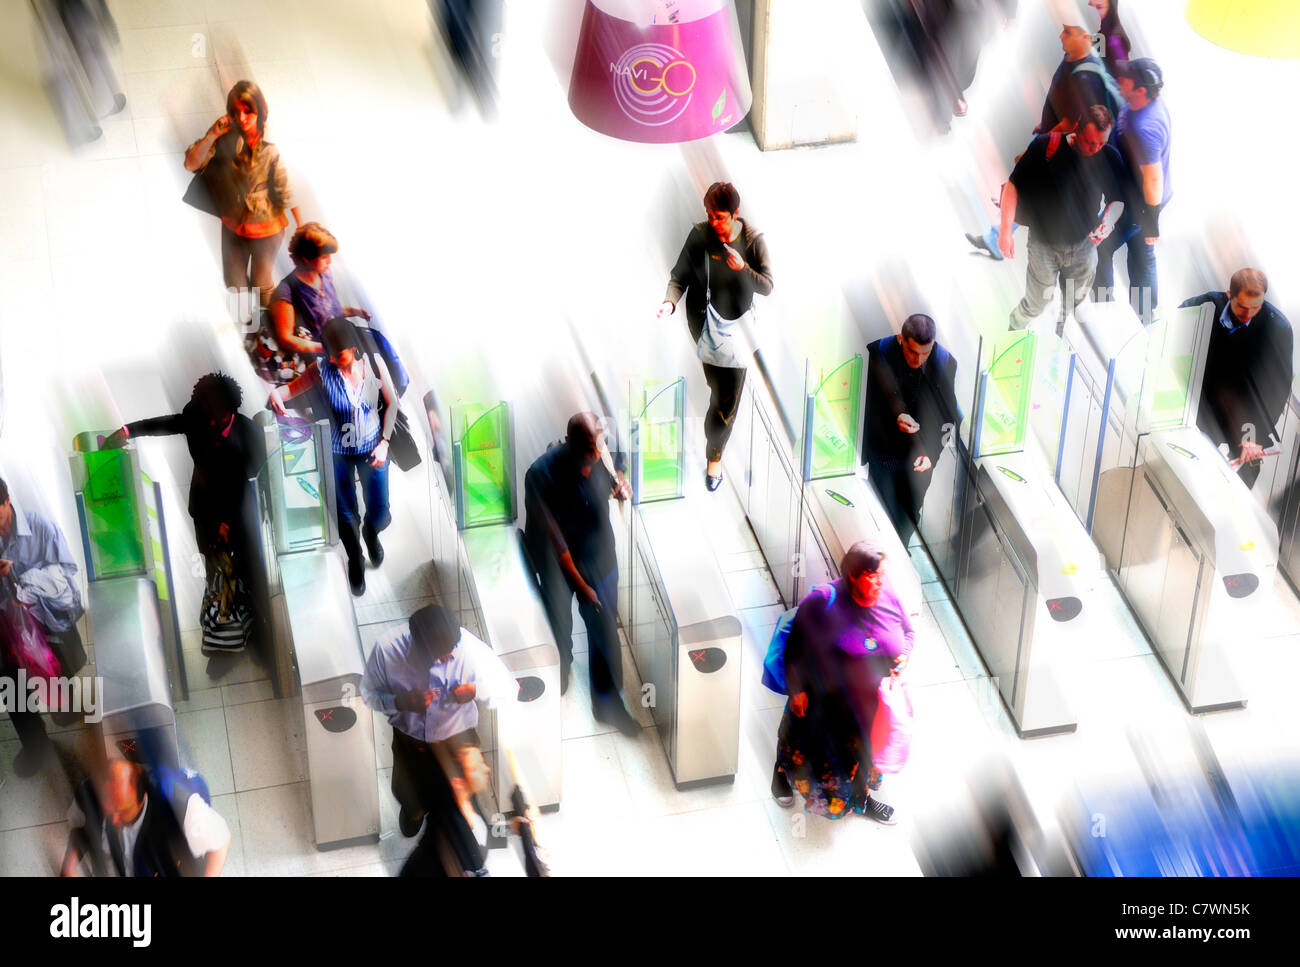 Paris, France. Les gens qui passent par des portes dans le métro de Paris - fortement manipulées / motion blur Banque D'Images